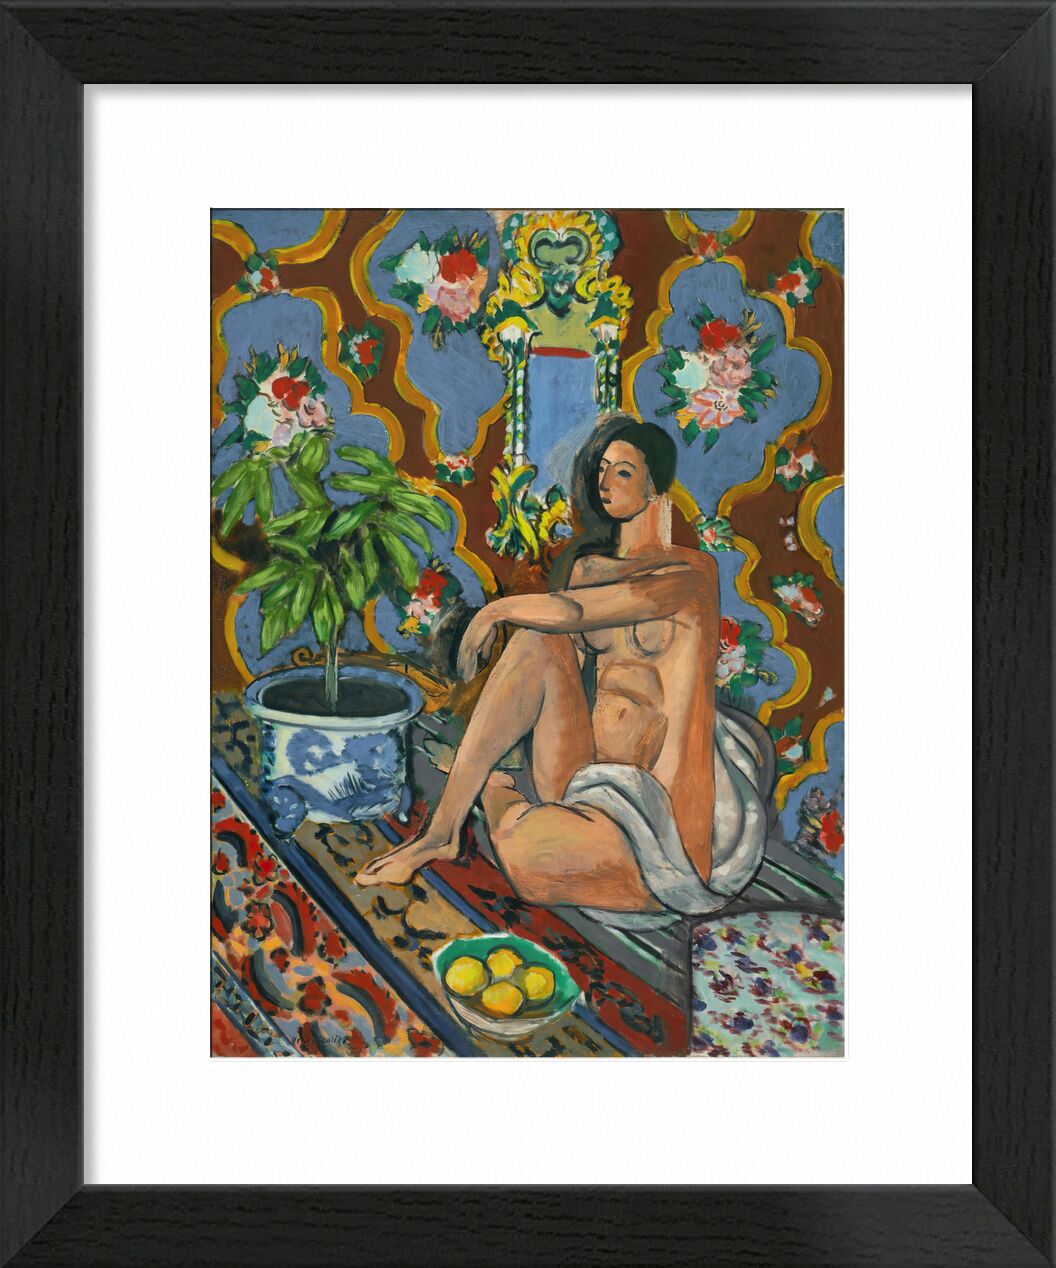 Dekorative Figur auf ornamentalem Hintergrund - Matisse von Bildende Kunst, Prodi Art, Frau, Henri Matisse, Matisse, Blumen, Asien, nackt